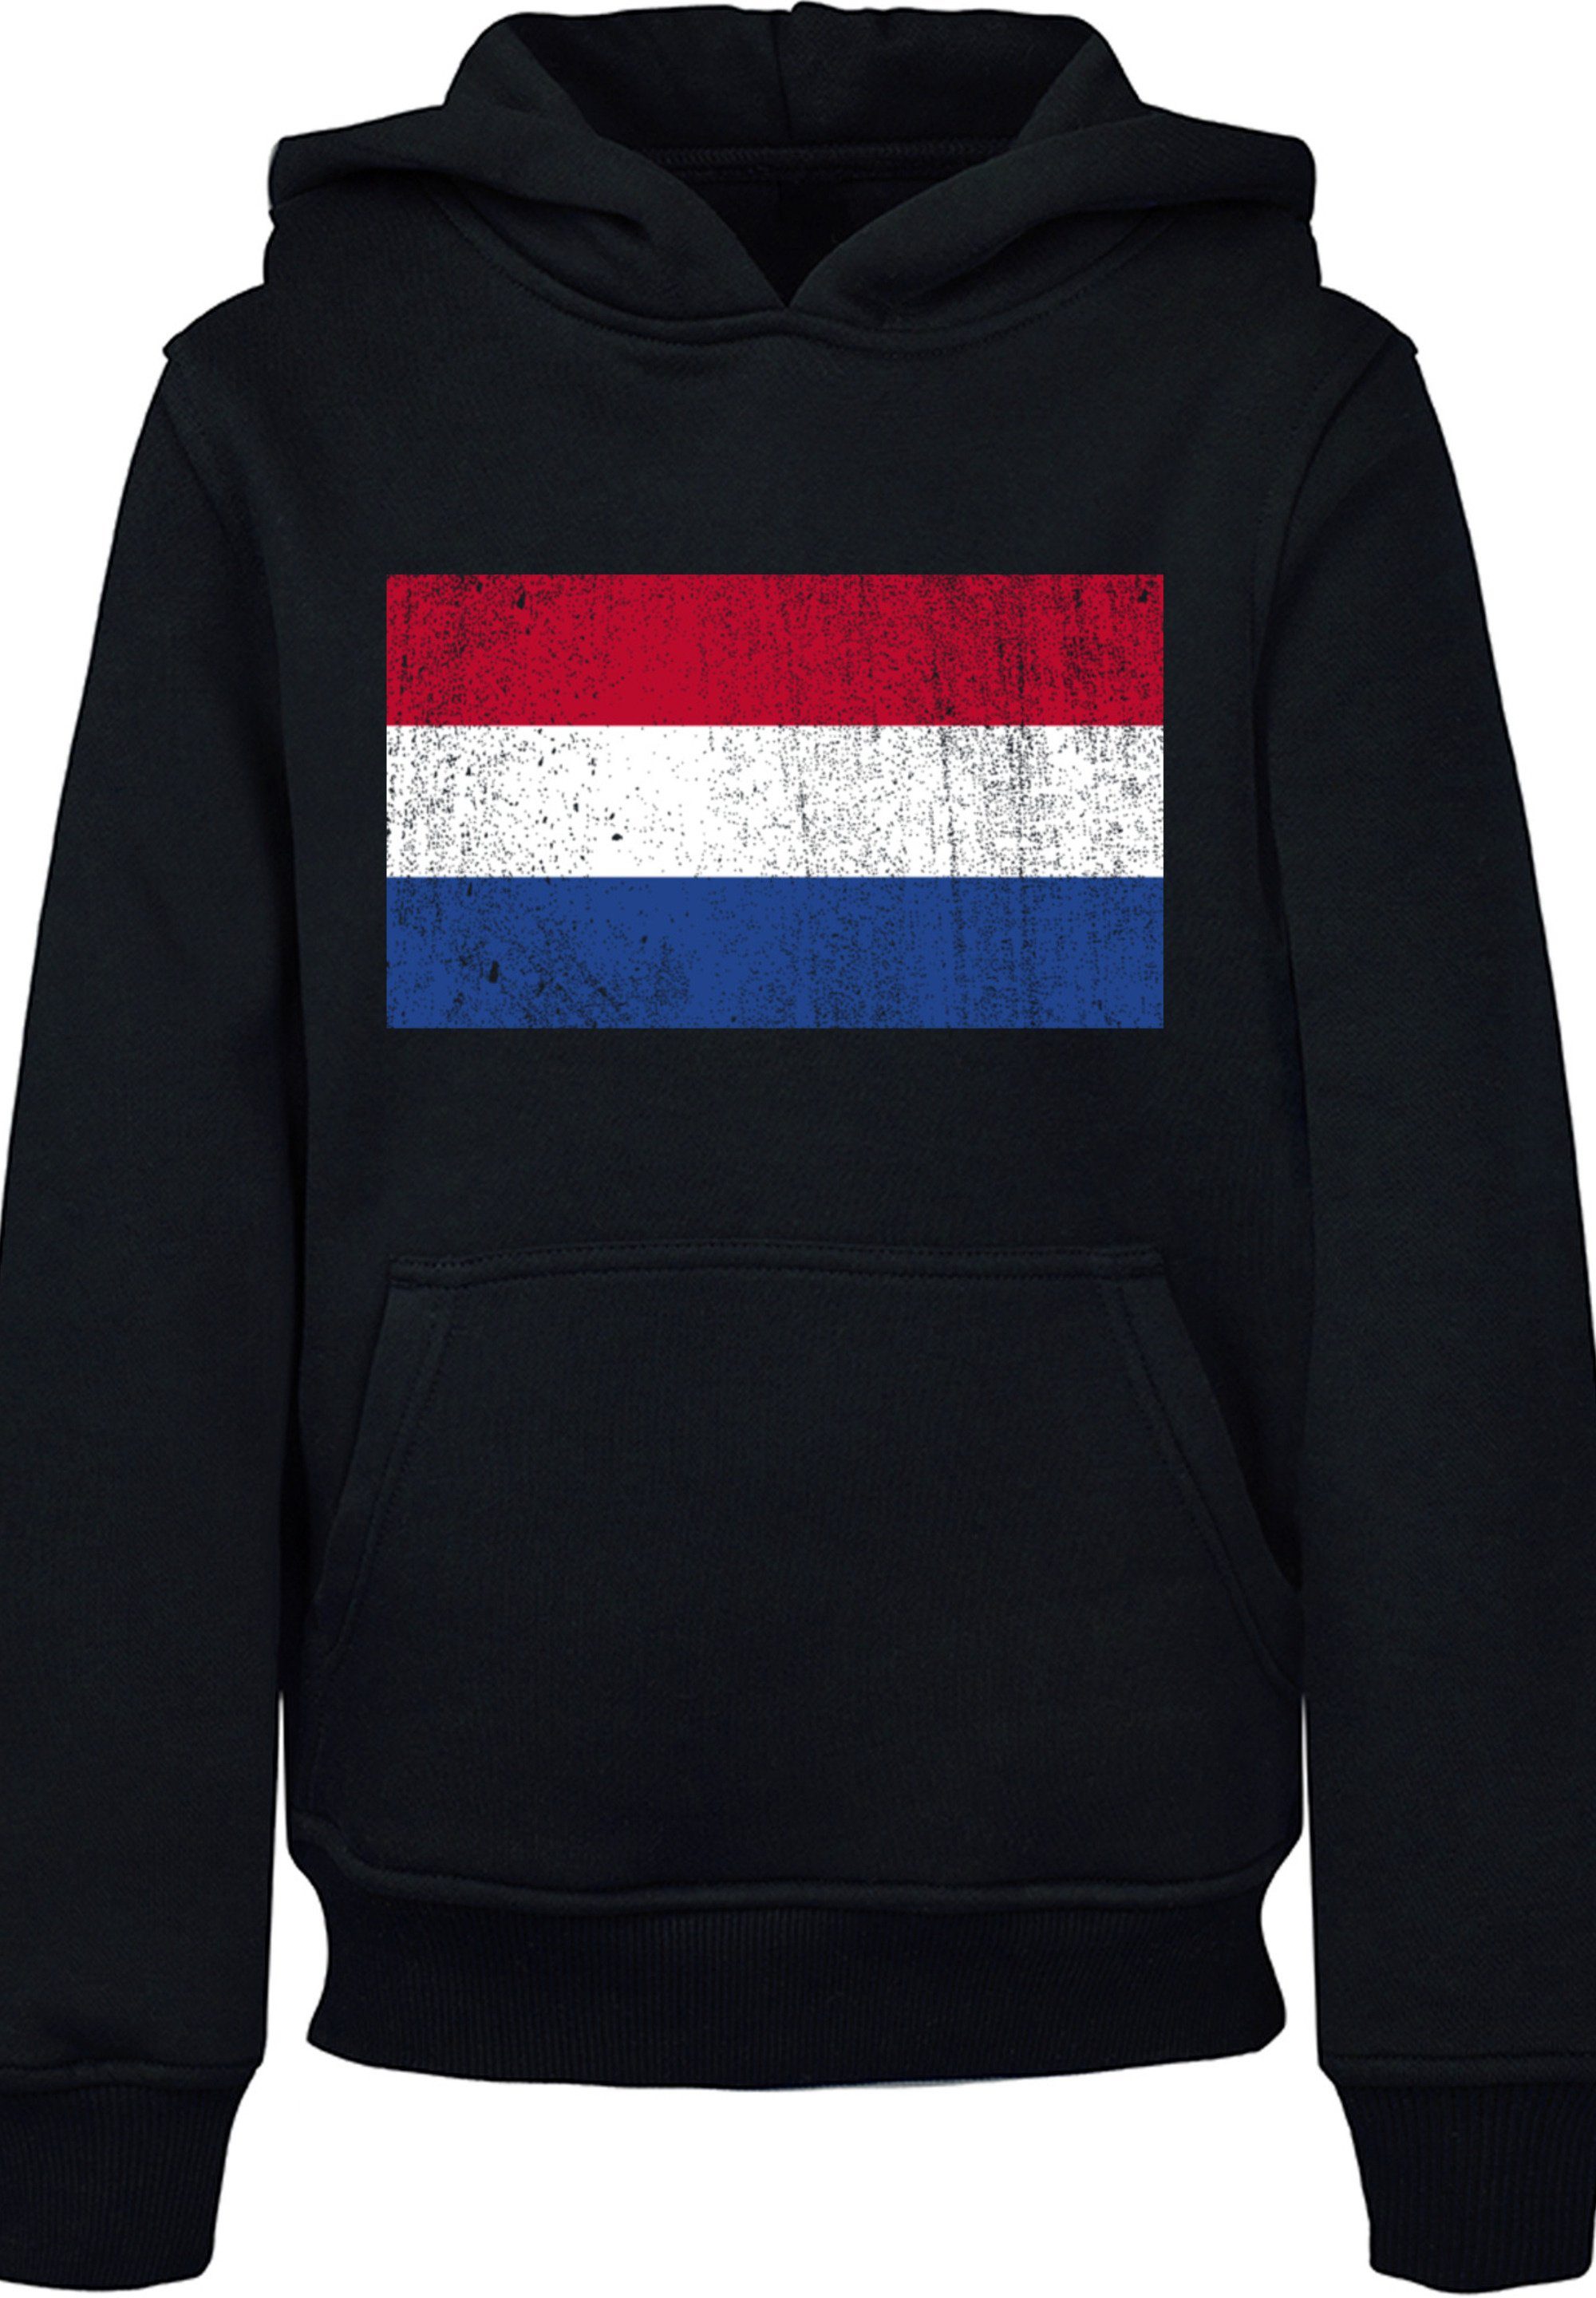 Kapuzenpullover schwarz Holland distressed NIederlande F4NT4STIC Flagge Netherlands Print